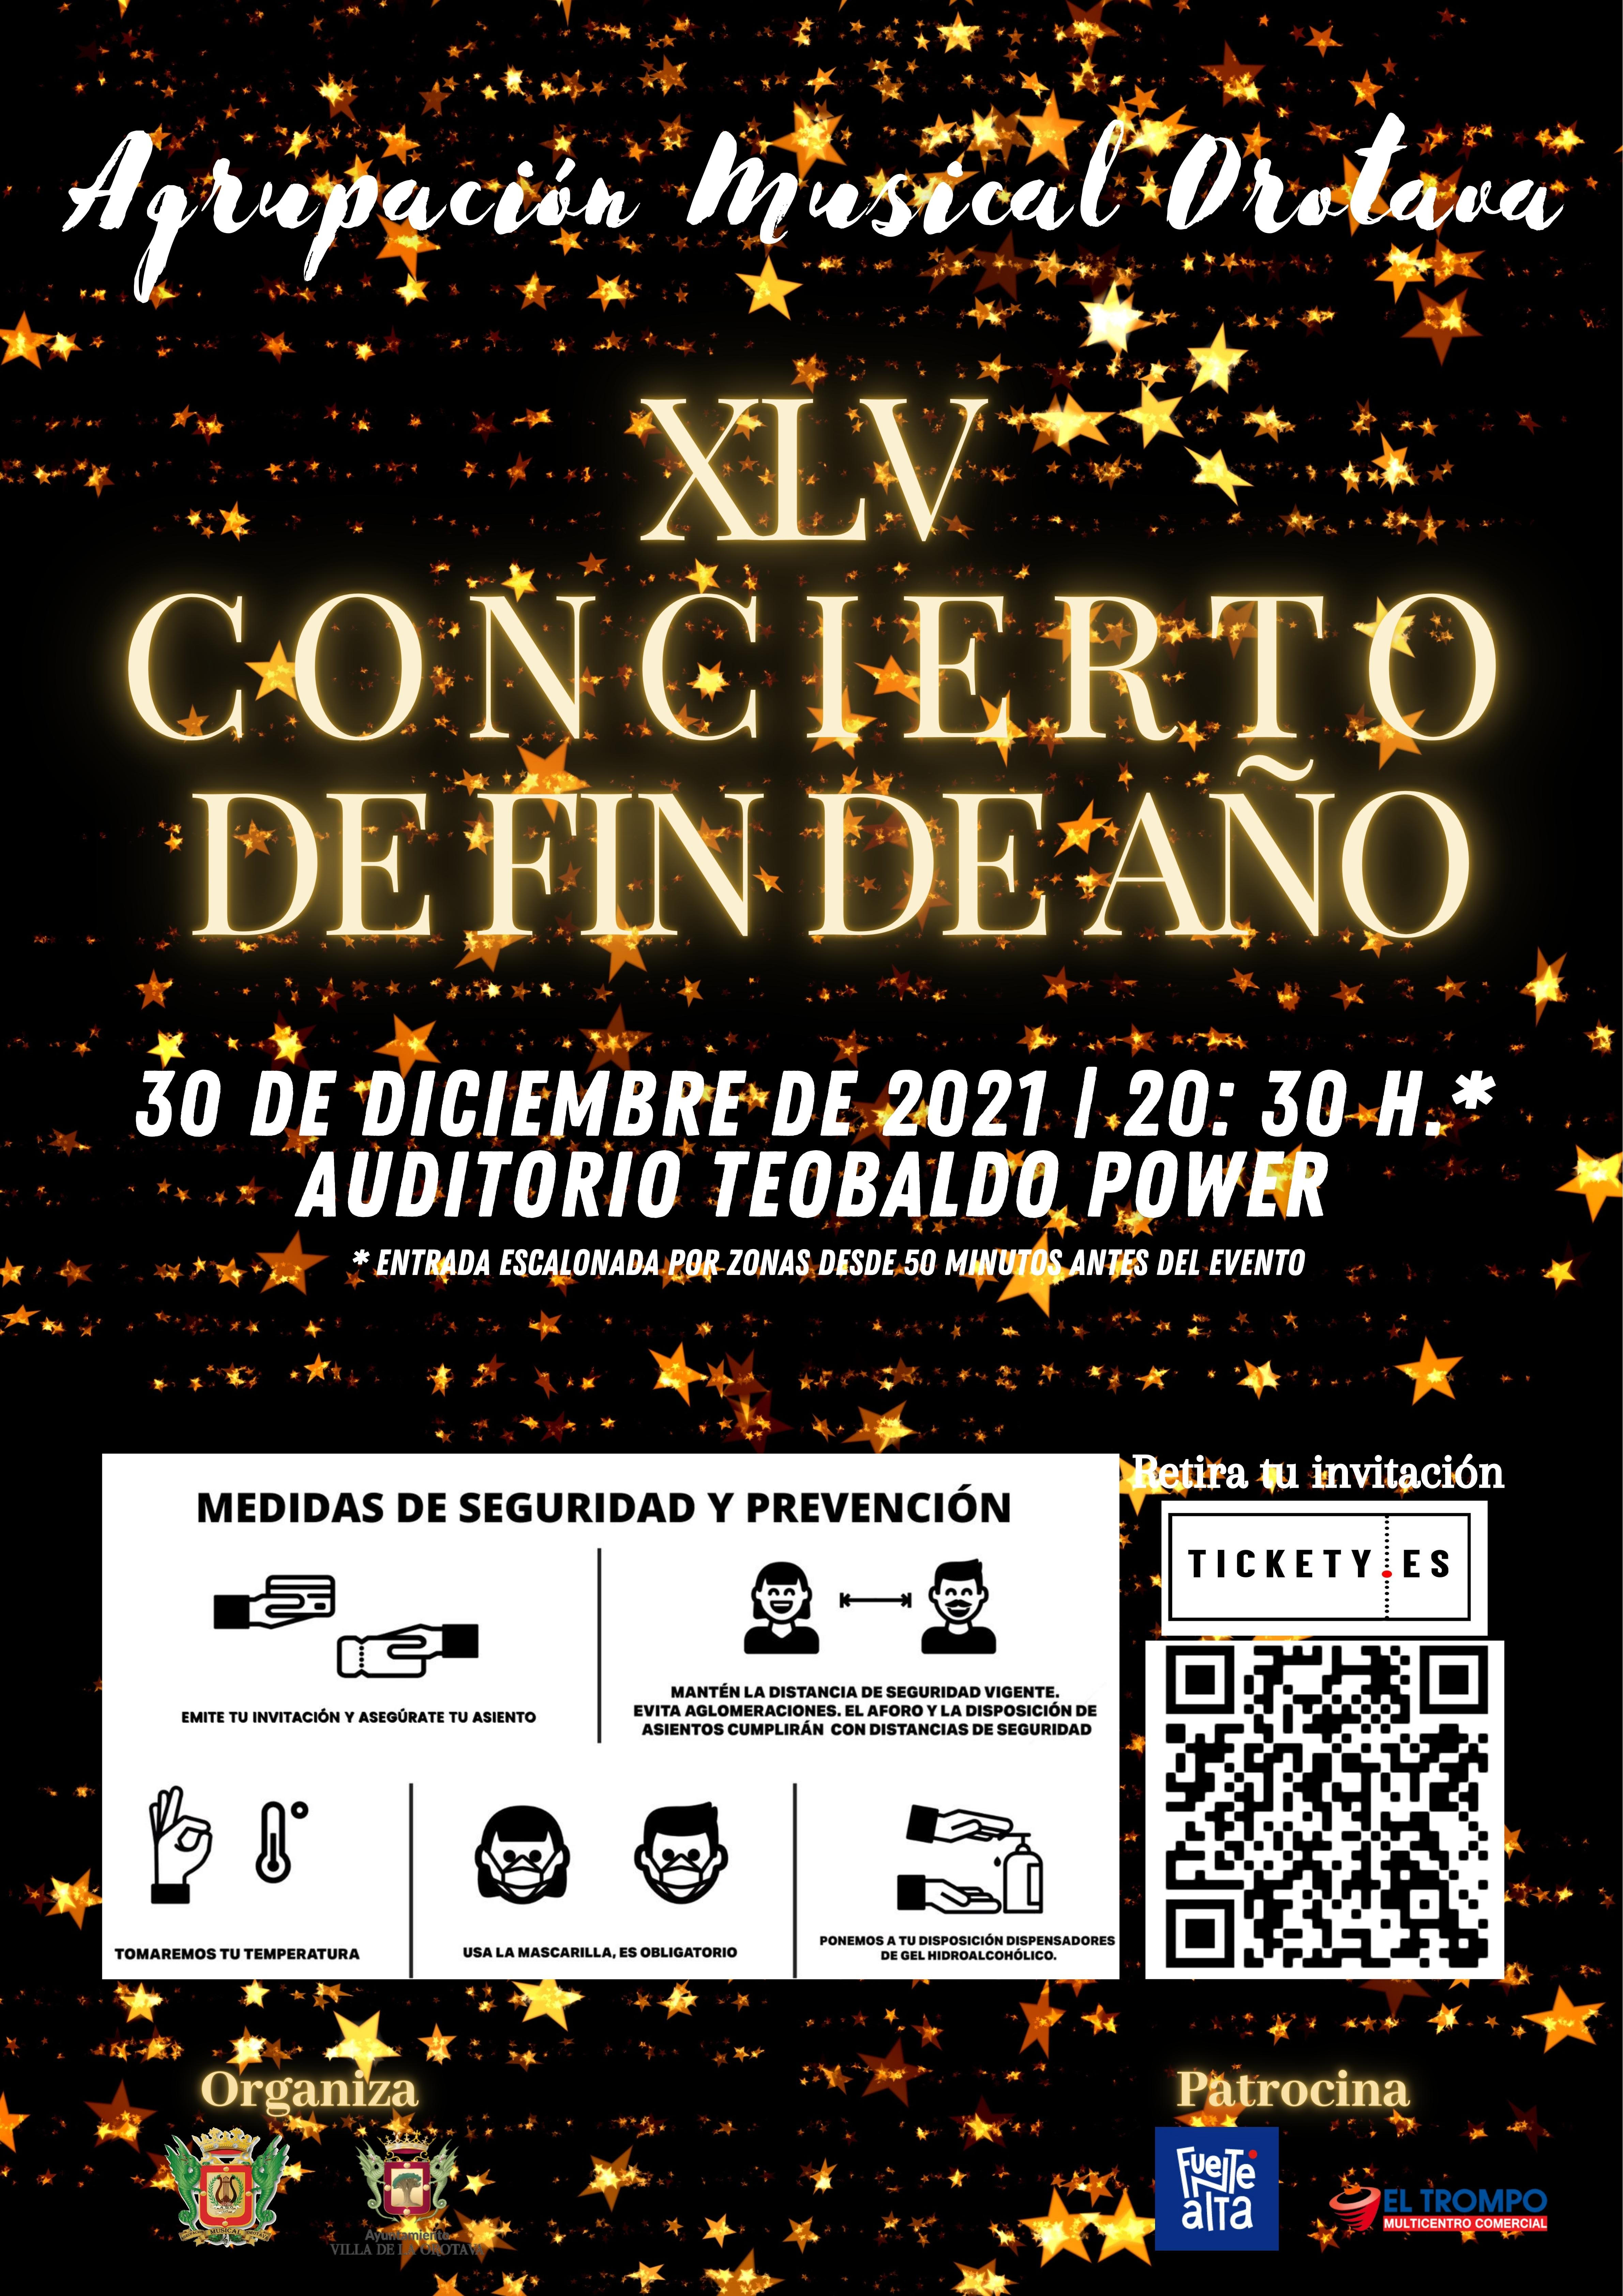 El tradicional Concierto de Fin de Año será el 30 de diciembre en el Auditorio Teobaldo Power